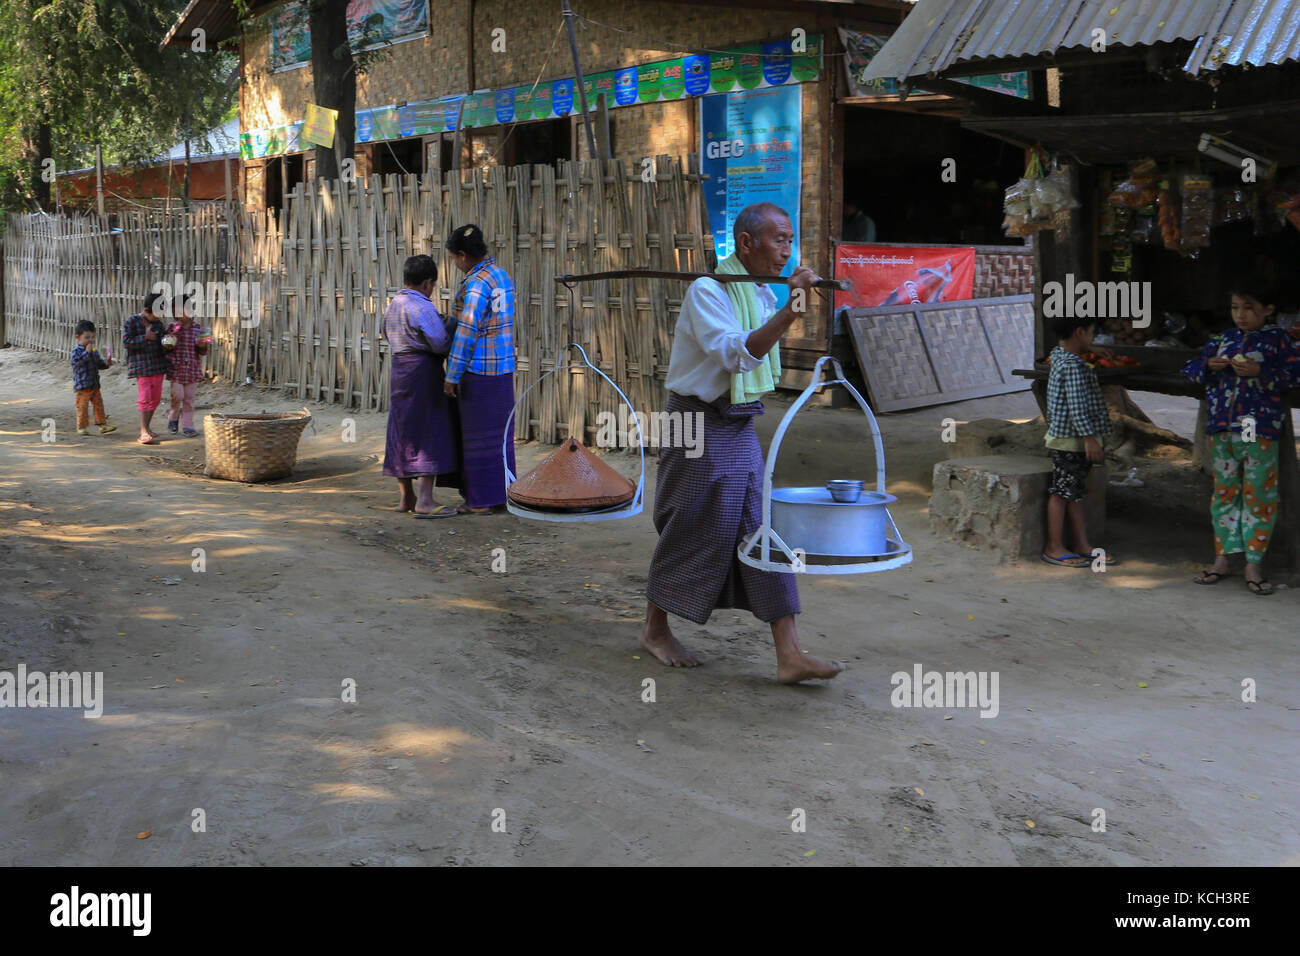 Ein Mann im Dorf Yandabo auf dem Irrawaddy Fluss in Myanmar (Birma) ist die Töpfe mit Essen, während Frauen und Kinder in der Nähe von einem Geschäft stehen. Stockfoto